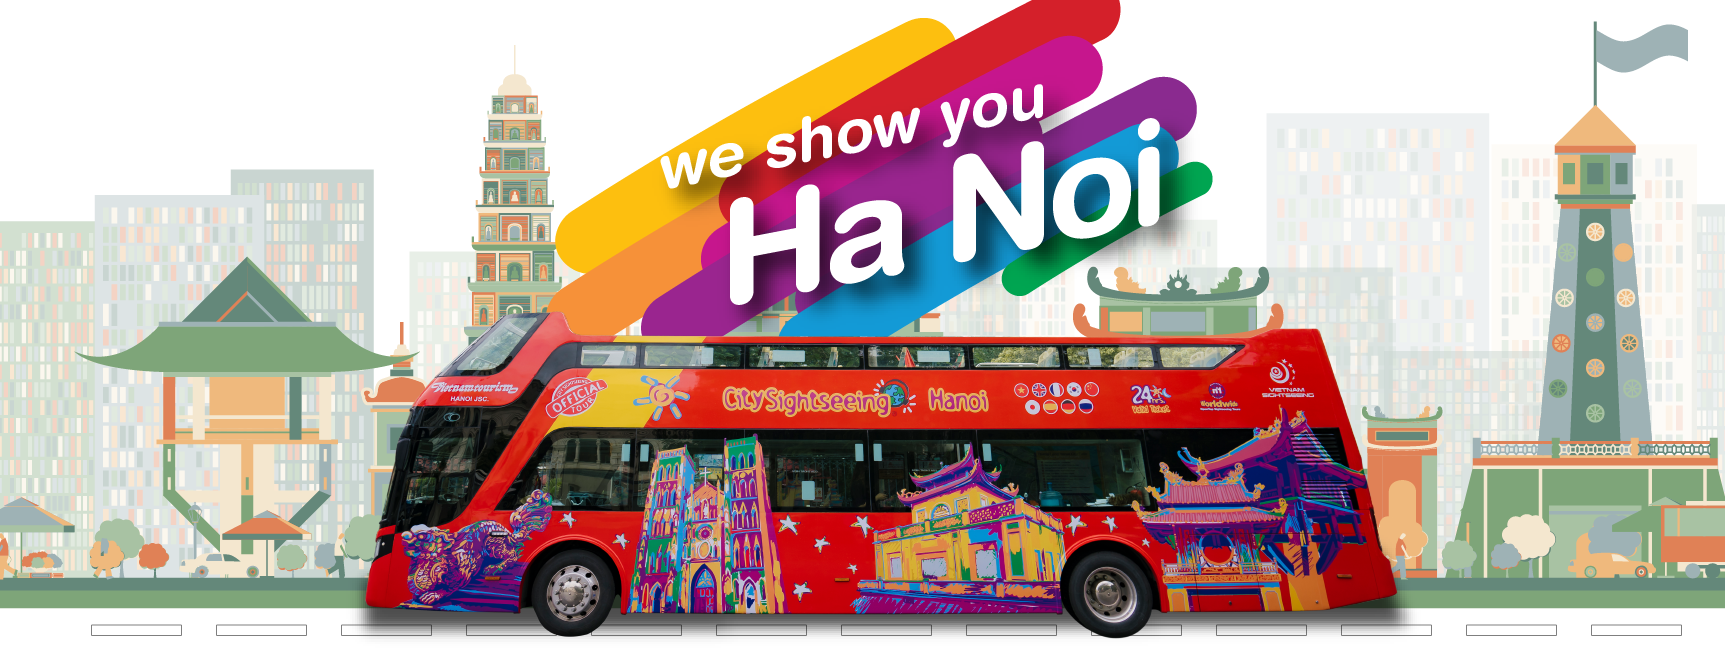 Khám phá thủ đô Hà Nội một cách dễ dàng với Hanoi Hop-On Hop-Off Bus của KKday! Tận hưởng chuyến du lịch tuyệt vời và khám phá những địa điểm nổi tiếng của thành phố xinh đẹp này. Đừng bỏ lỡ cơ hội tuyệt vời này, đặt vé ngay hôm nay để trải nghiệm tuyệt vời khi đến Hà Nội.